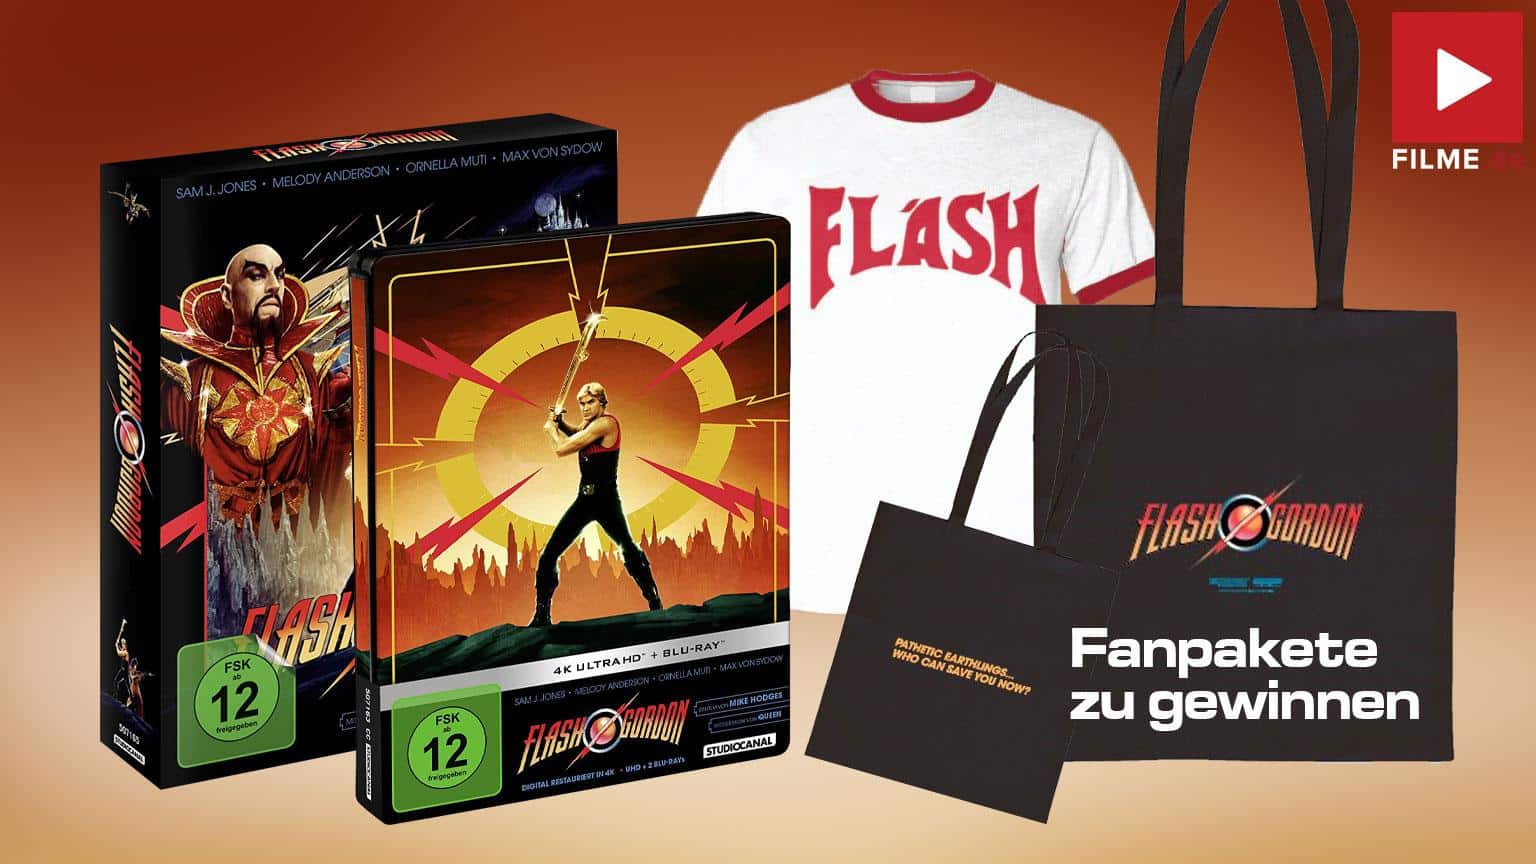 Flash Gordon - Limited Steelbook Edition (4K Ultra HD + Blu-ray) Gewinnspiel Artikelbild shop kaufen gewinnen